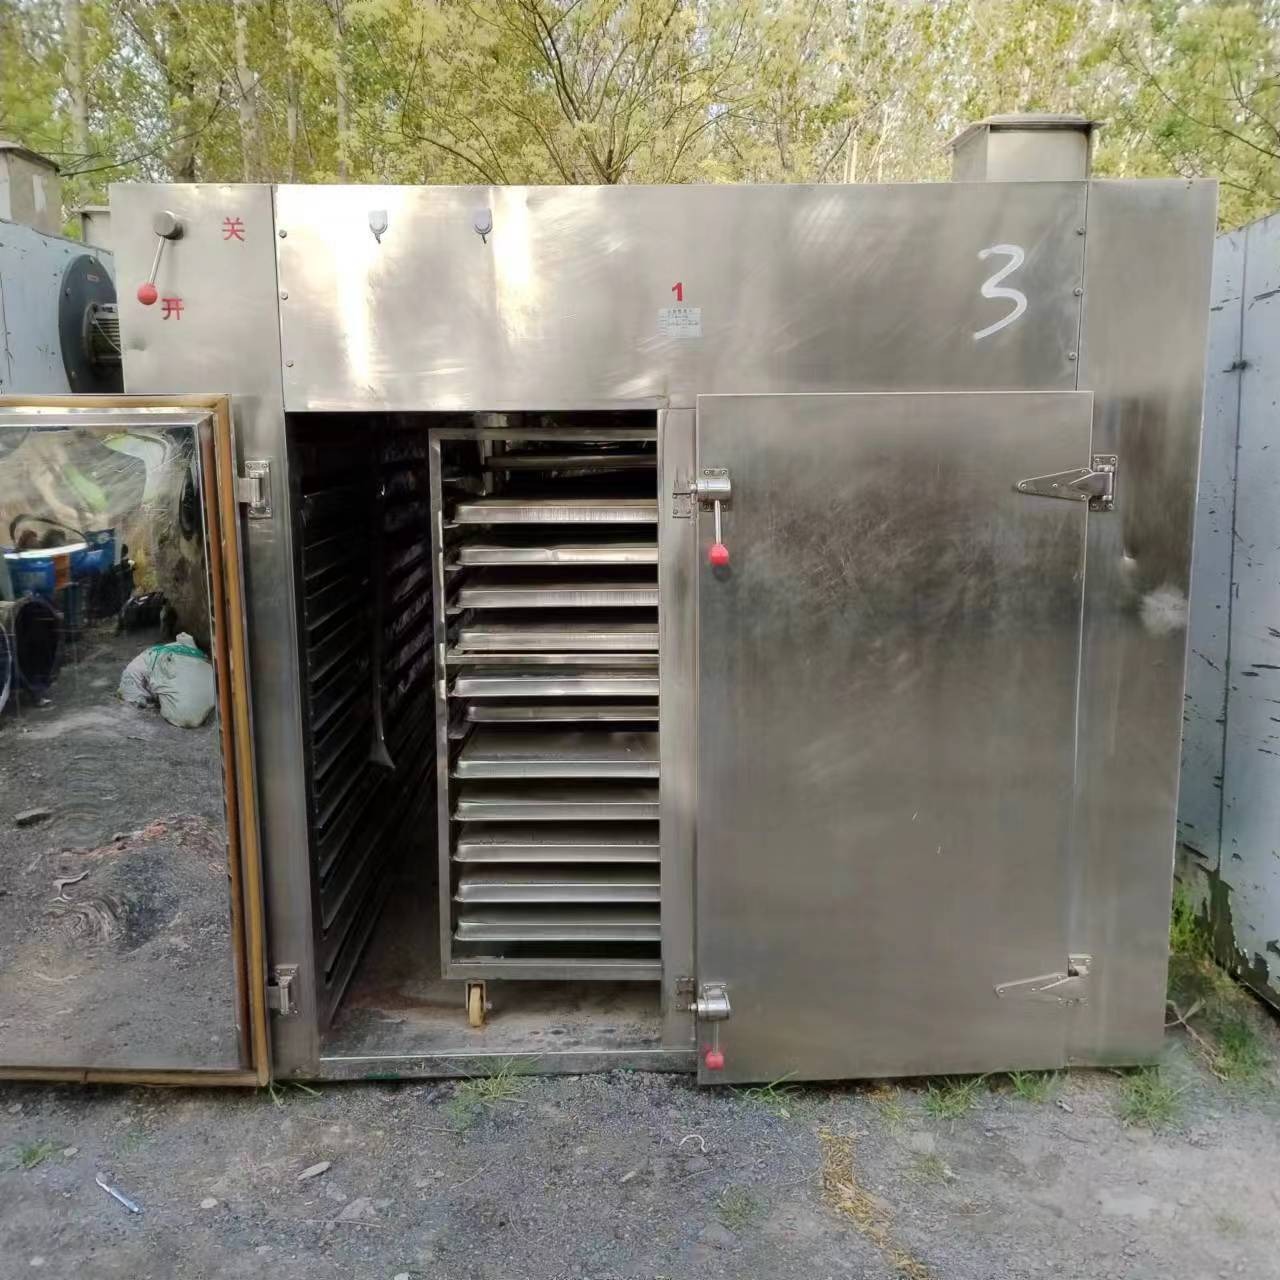 兴畅出售二手烘箱 电加热烘箱 热风循环烘箱 48盘烘箱 96盘烘箱 各种型号烘箱 FC-98